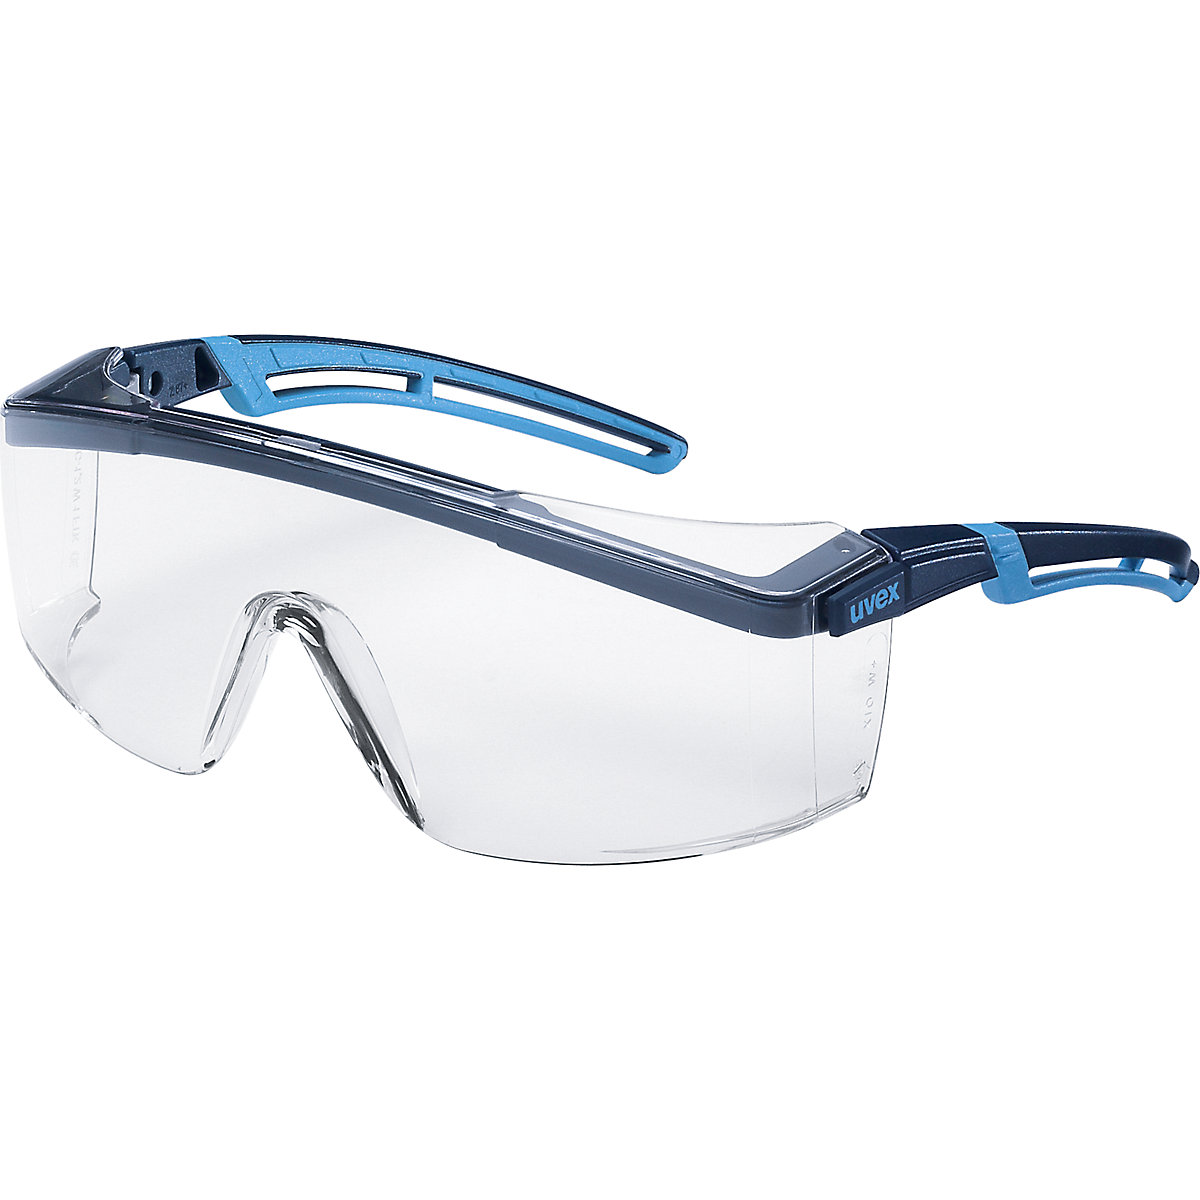 atrospec 2.0 száras védőszemüveg - Uvex